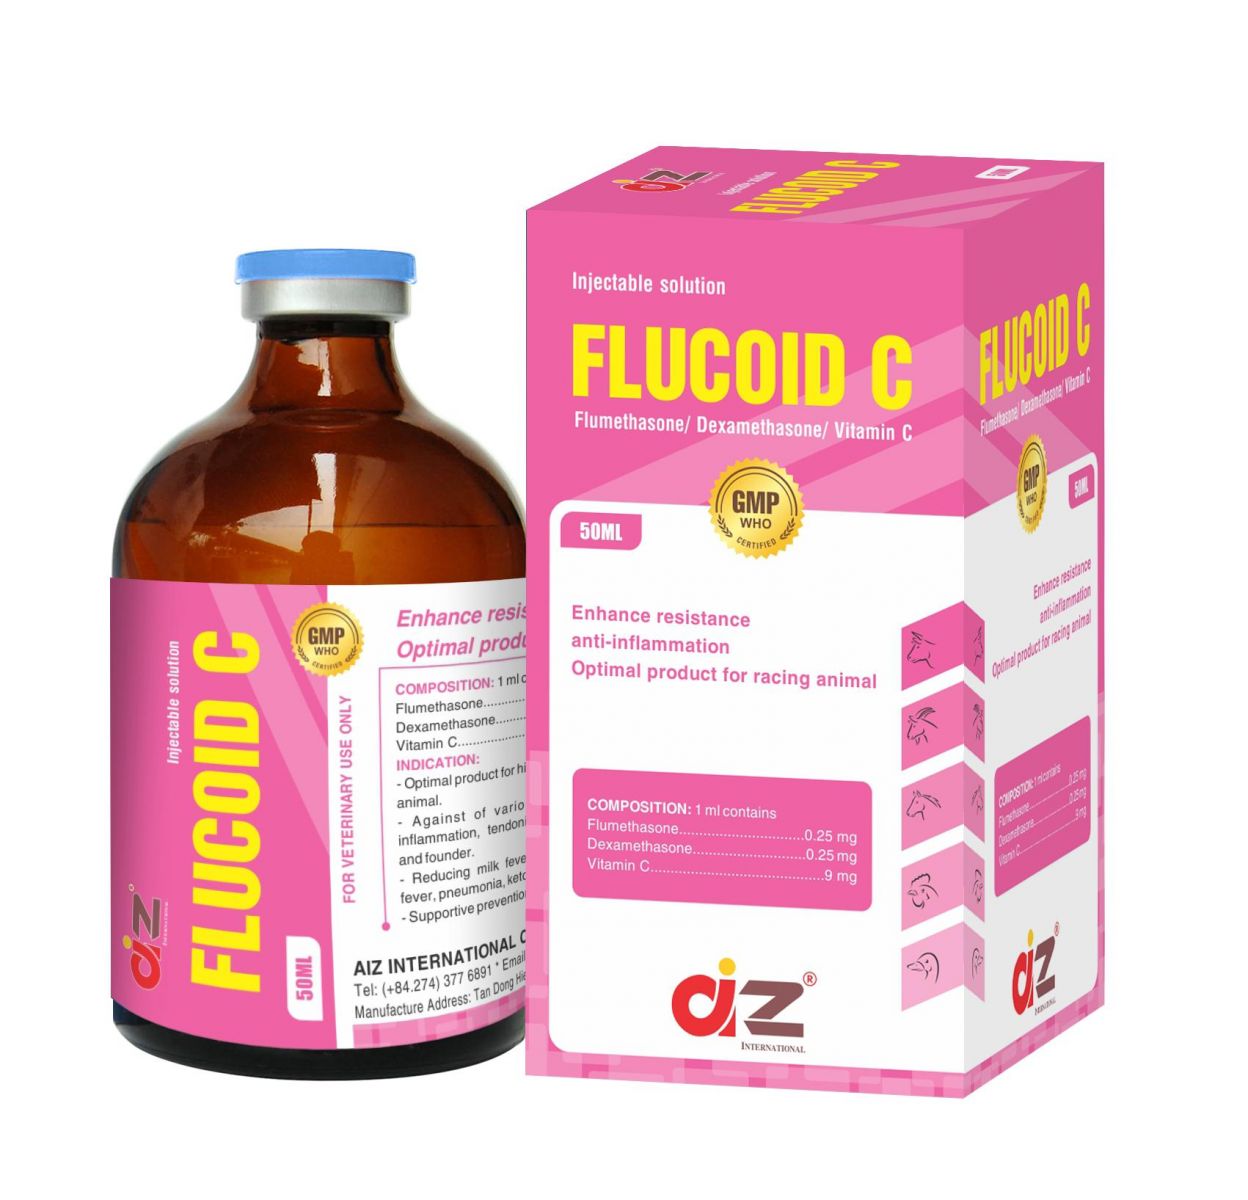 FLUCOID C